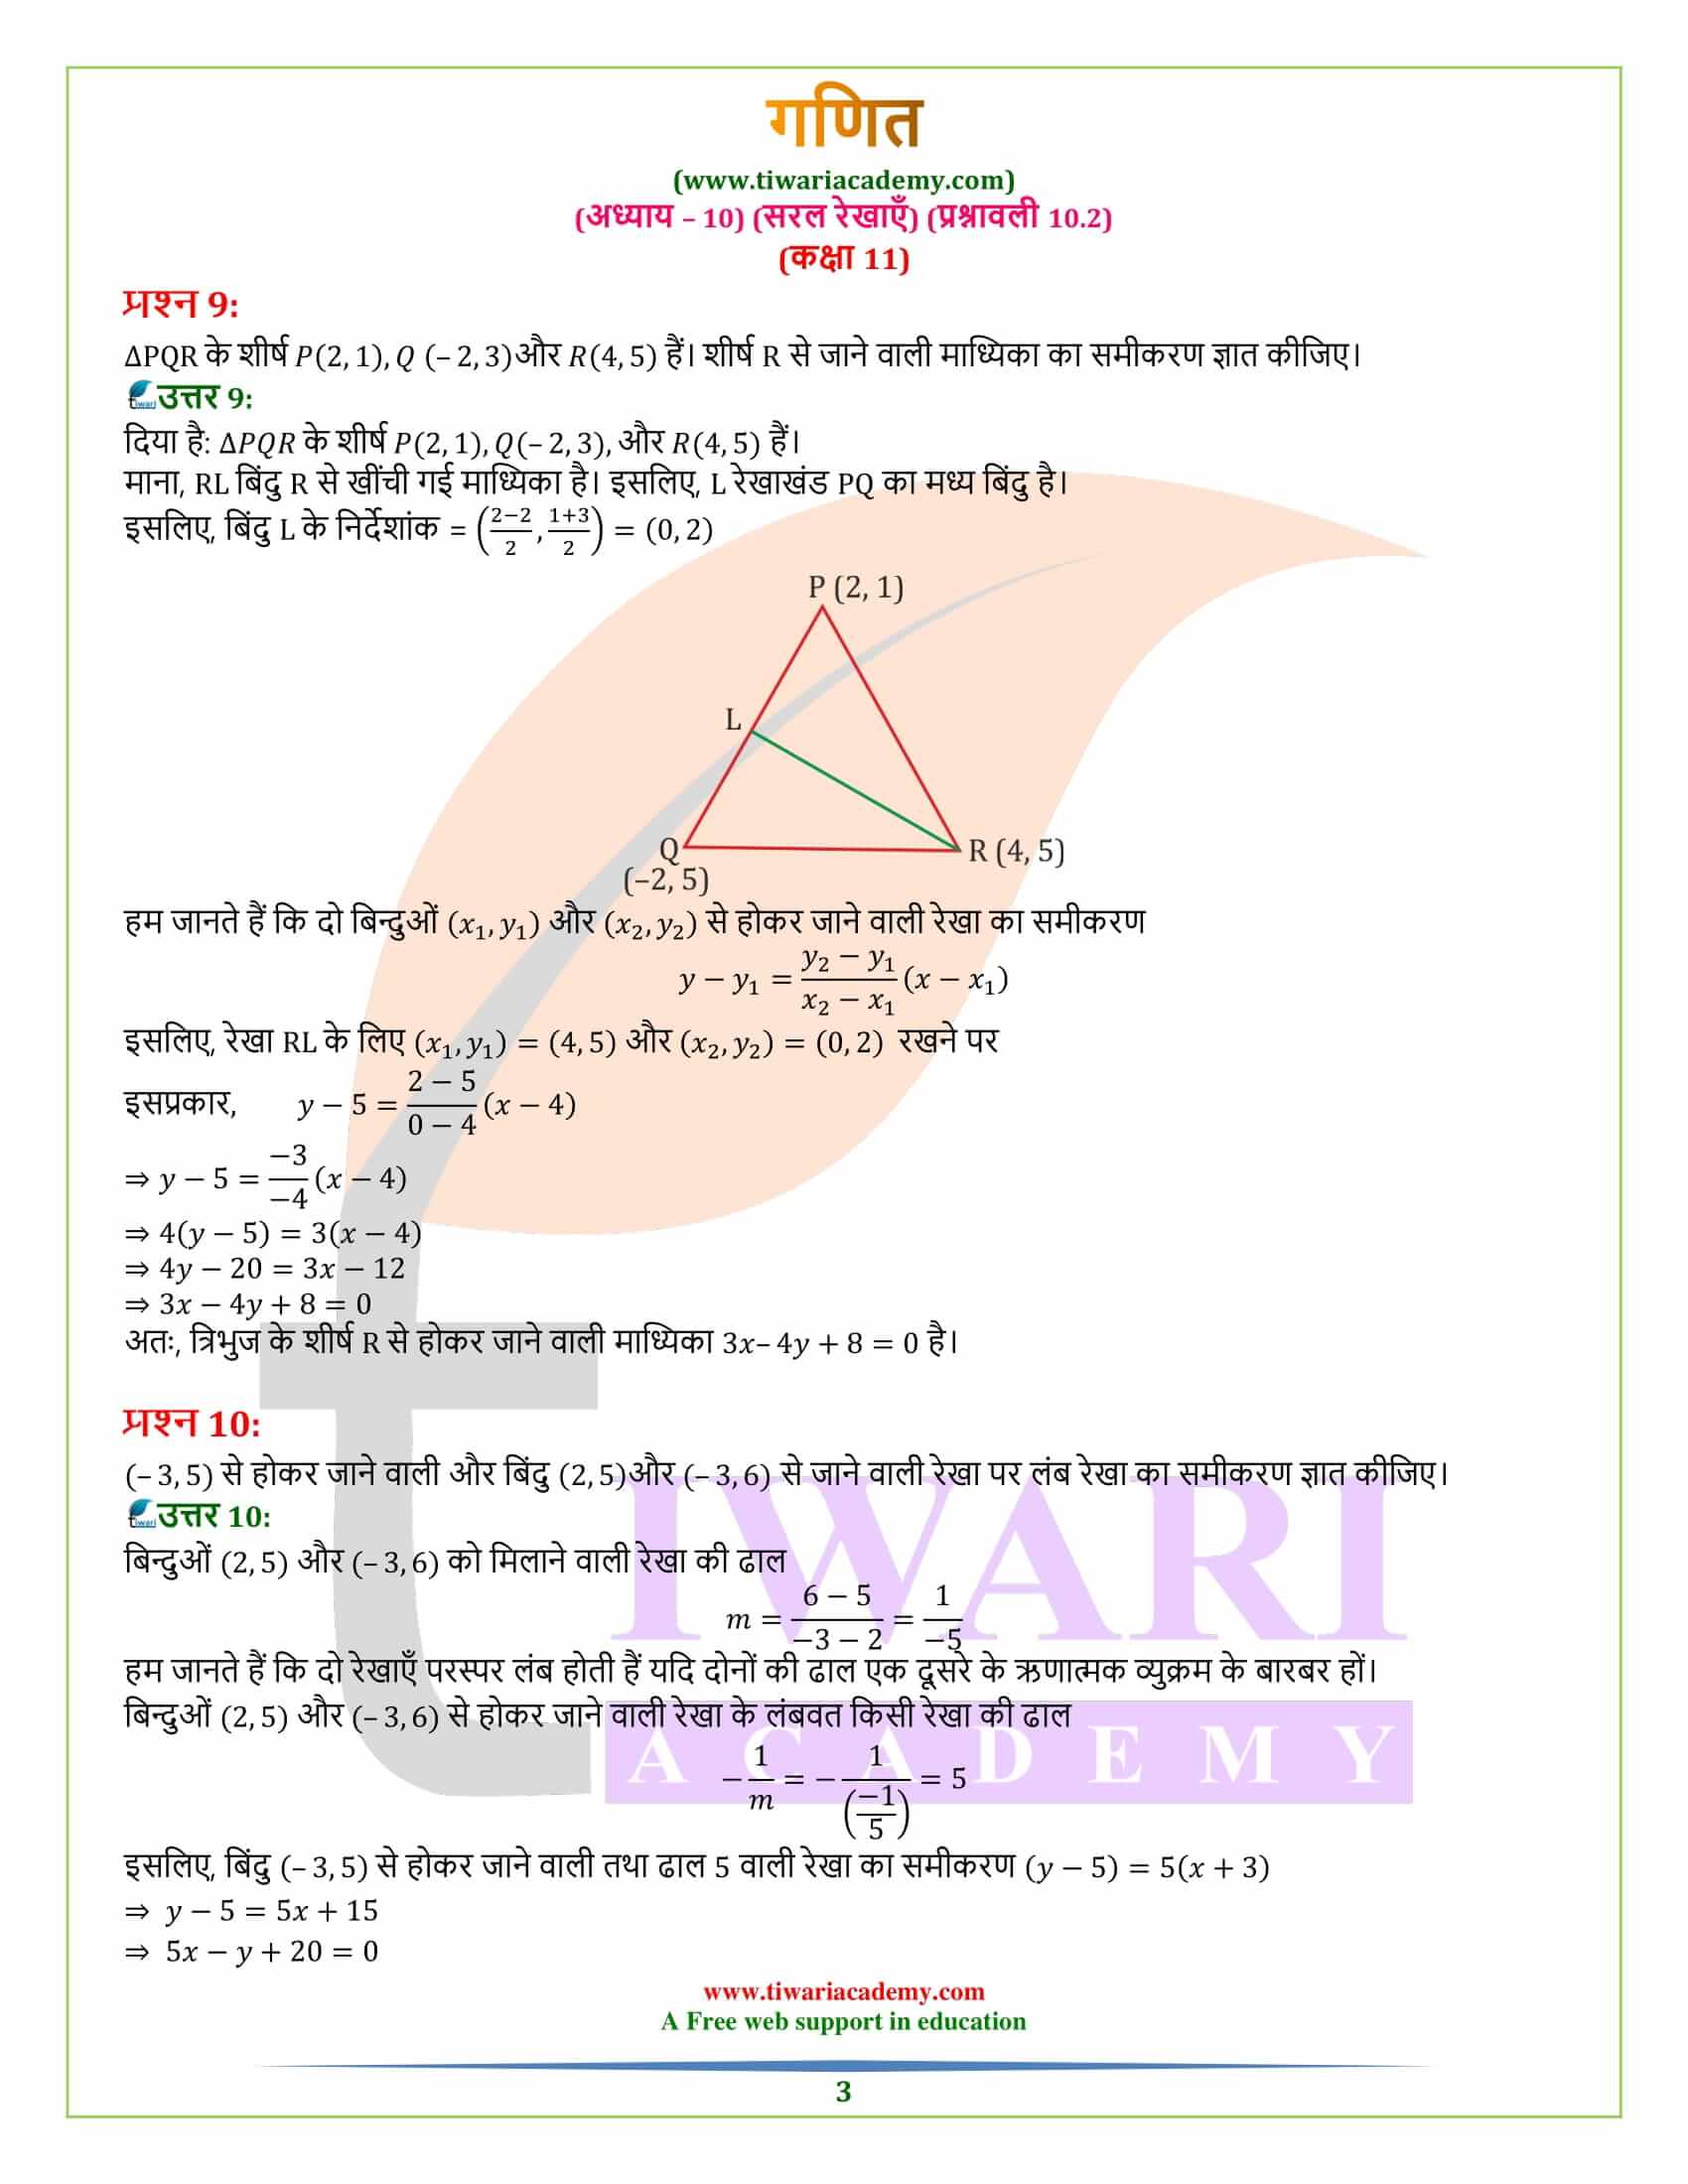 एनसीईआरटी समाधान कक्षा 11 गणित प्रश्नावली 10.2 हिंदी मीडियम